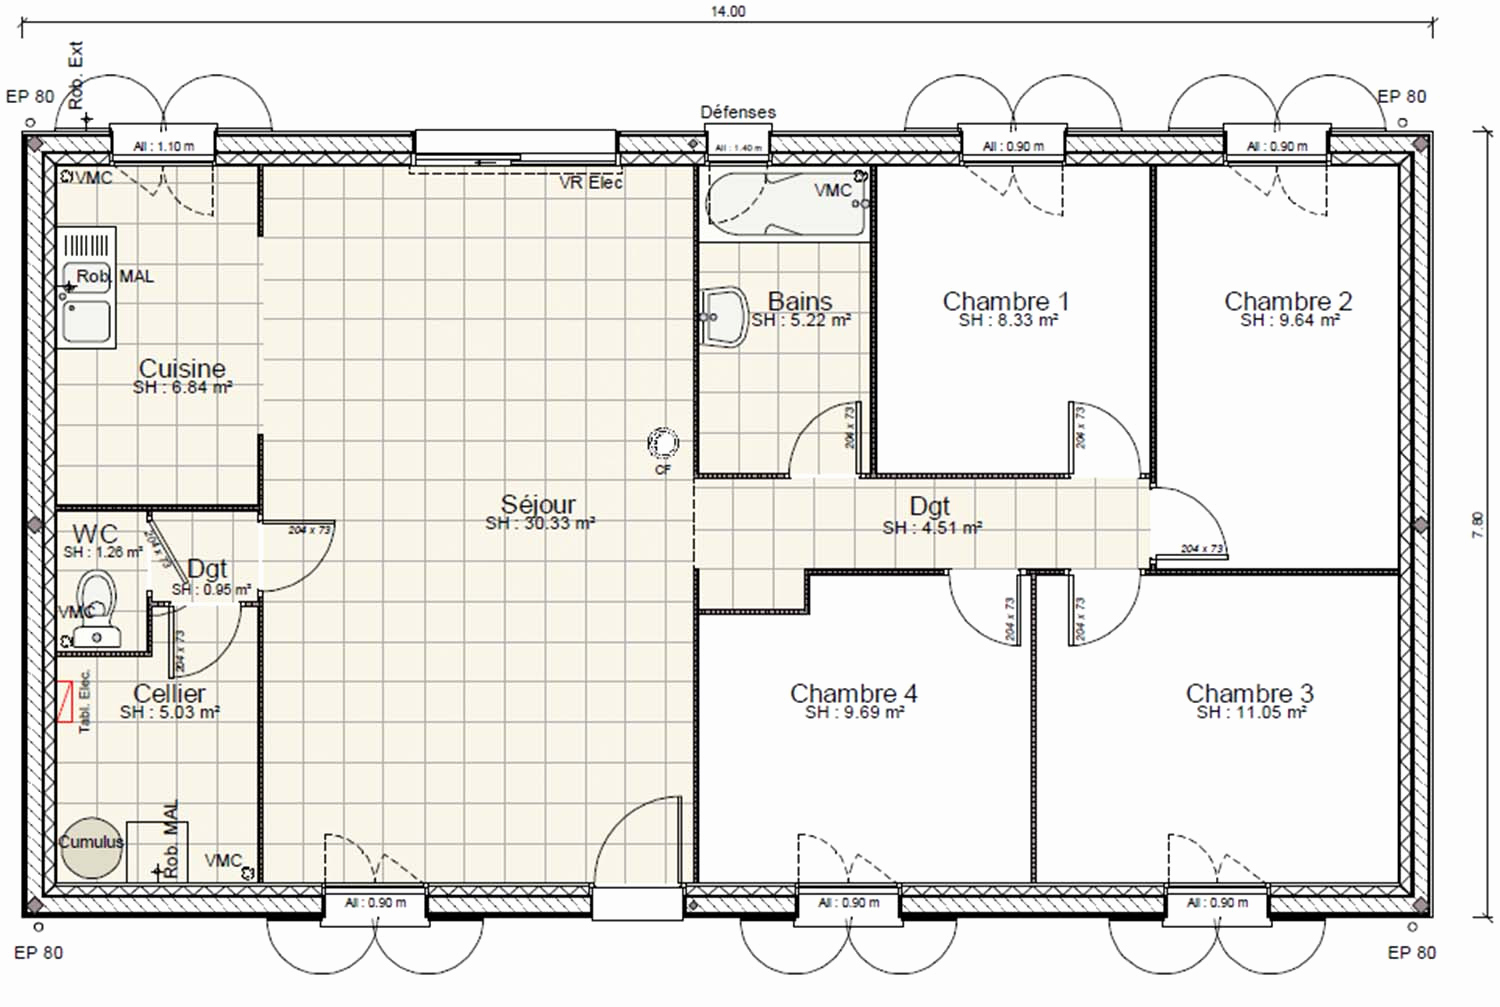 Plan De Maison Gratuit plan de maison gratuit 5 chambres pdf : Infos et ressources